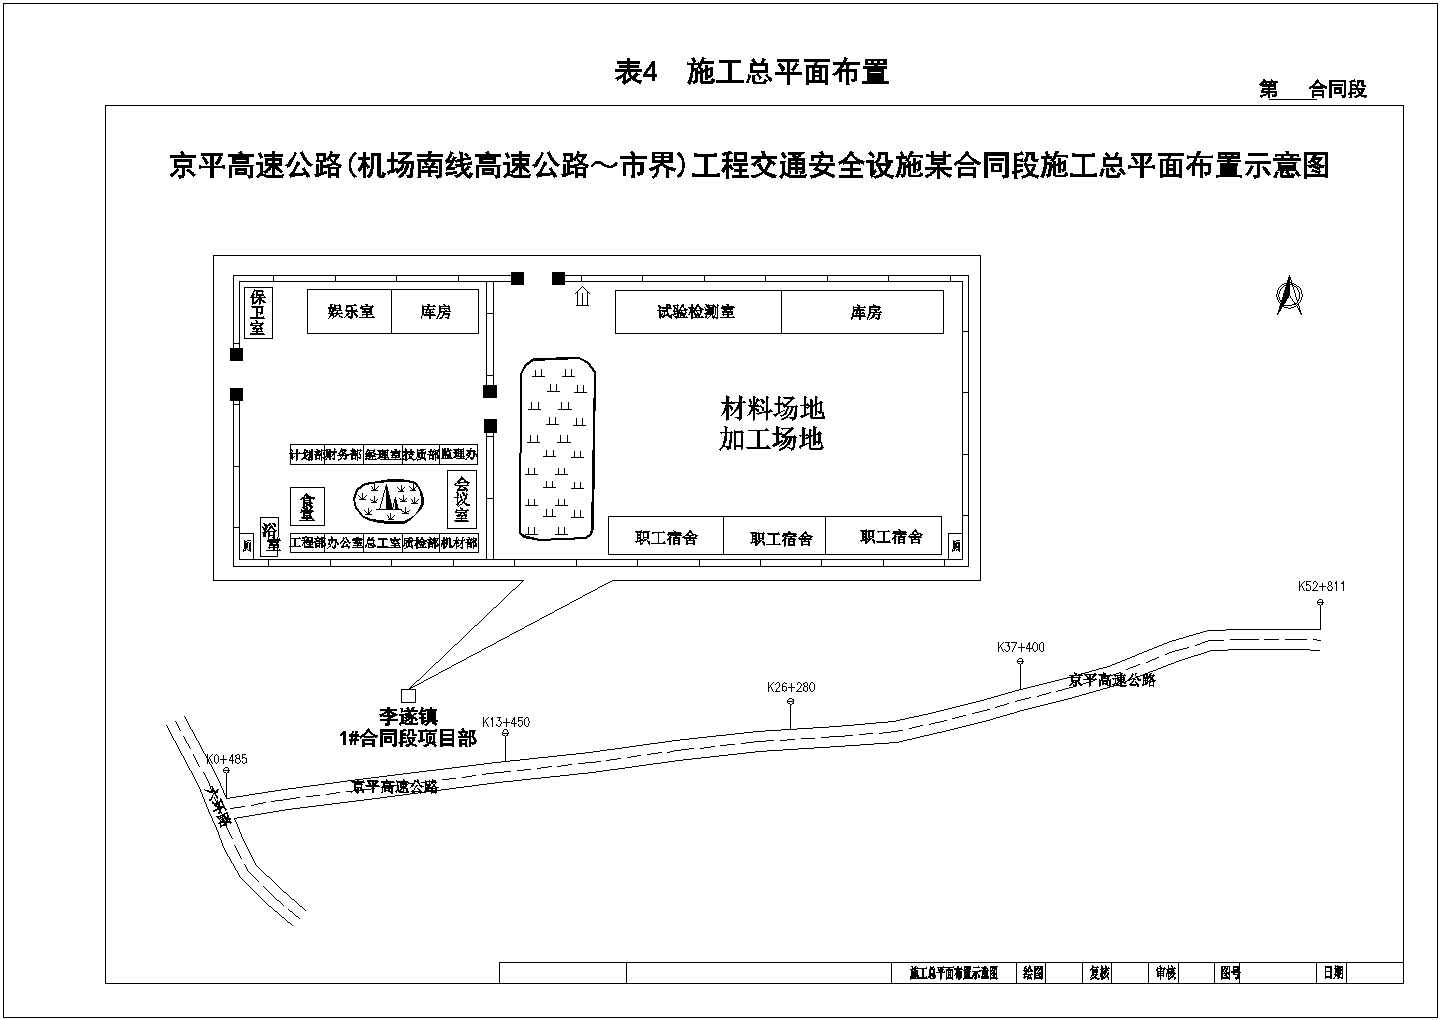 京平高速公路某段交通工程施工组织设计